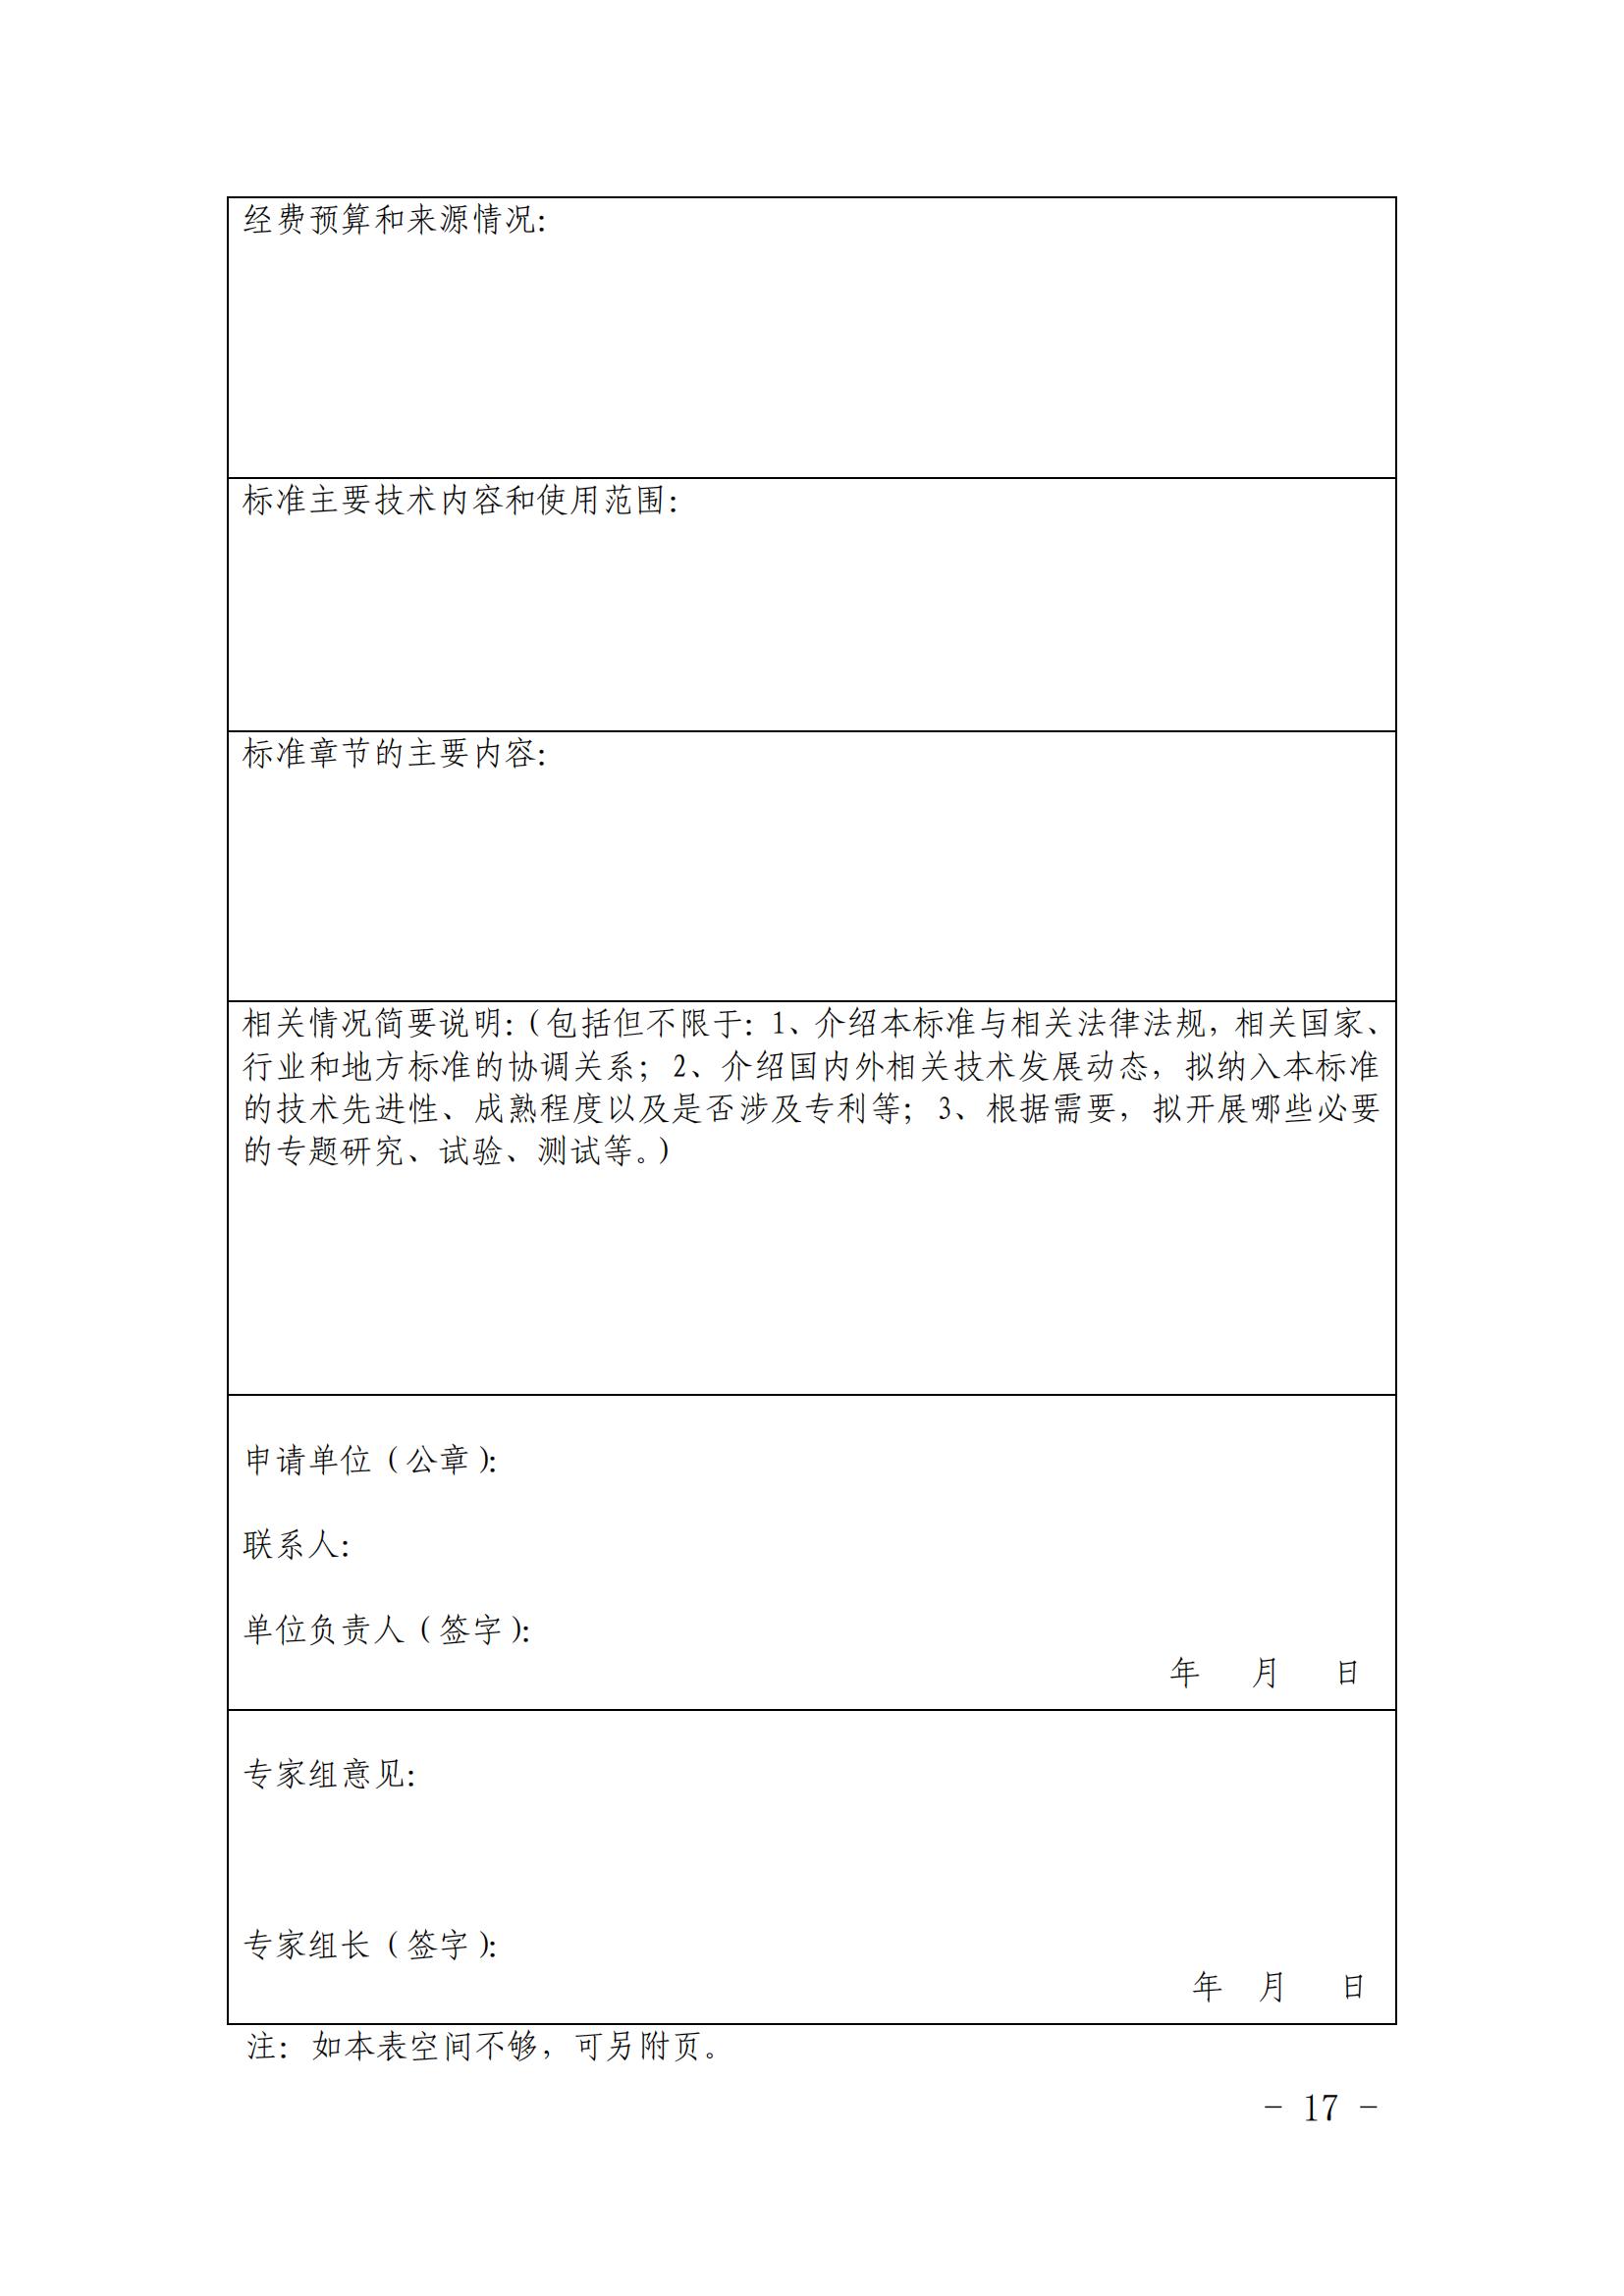 关于印发《中国核能行业协会团体标准管理办法（试行）》和《中国核能行业协会团体标准制修订细则（试行）》的通知_16.jpg